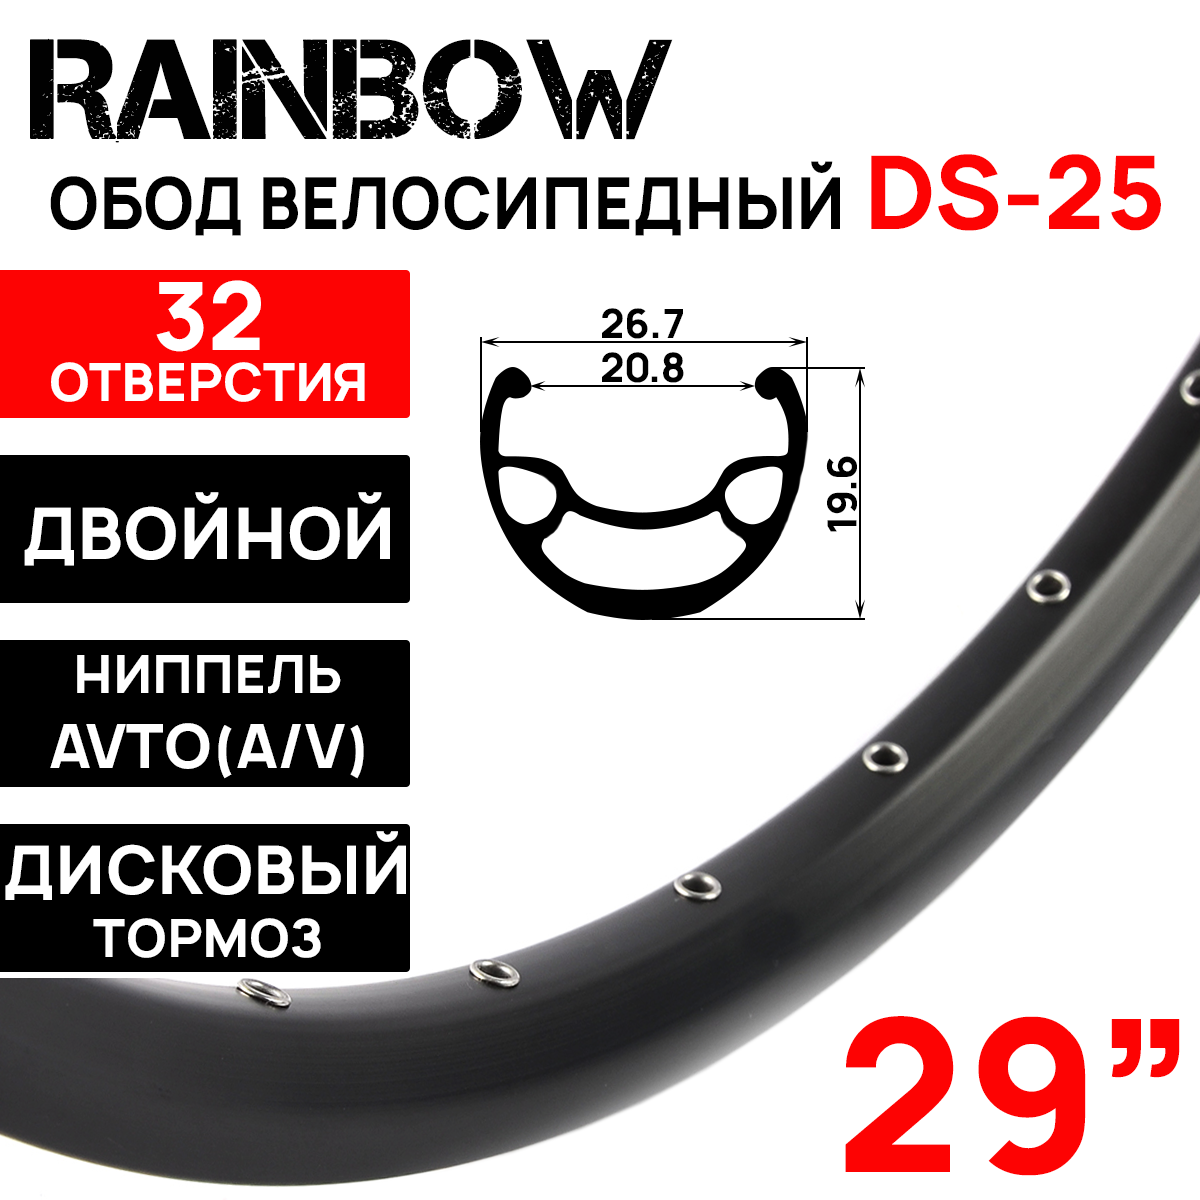 Обод Rainbow DS-25, 29" (622x20.8х26.7x19.6мм) двойной, пистонированный, под дисковый тормоз, 32 отверстия, A/V, ниппель, цвет черный